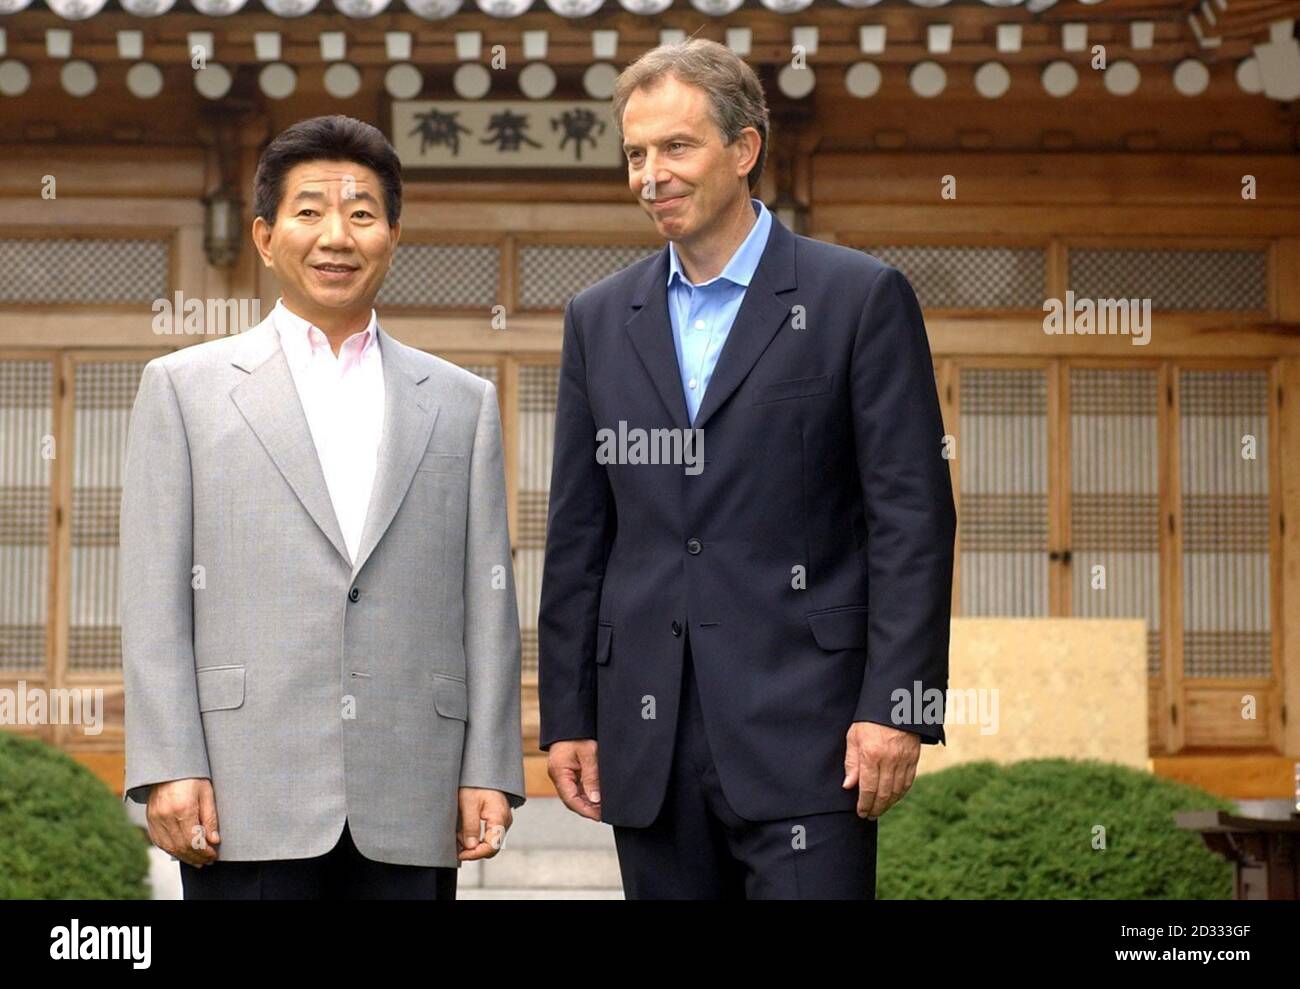 El primer ministro británico Tony Blair se reúne con el presidente surcoreano Roh en la Casa Azul, la residencia presidencial en Seúl durante su visita de una semana al extremo Oriente, que se realiza en Japón, Corea del Sur, China y Hong Kong. 01/12/2004 el Presidente Roh está comenzando una visita de estado de dos días a Gran Bretaña, el miércoles 1 de diciembre de 2004. Asistirá a un banquete estatal en el Palacio de Buckingham esta noche y se reunirá con Tony Blair mañana. Foto de stock